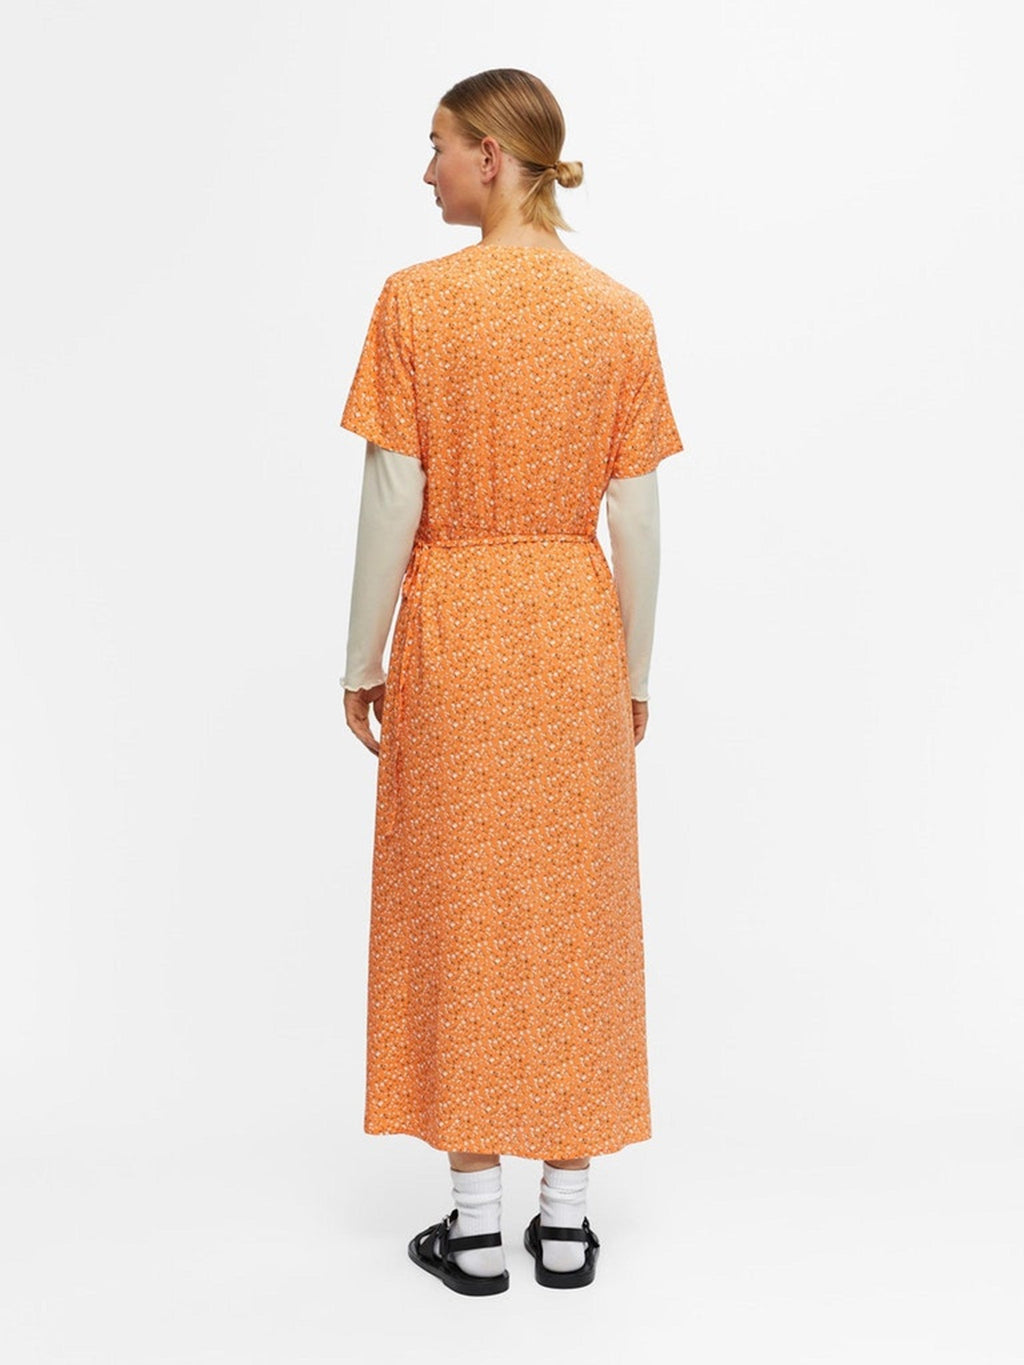 Ema Elise Wrap Dress - Sunset autunnale